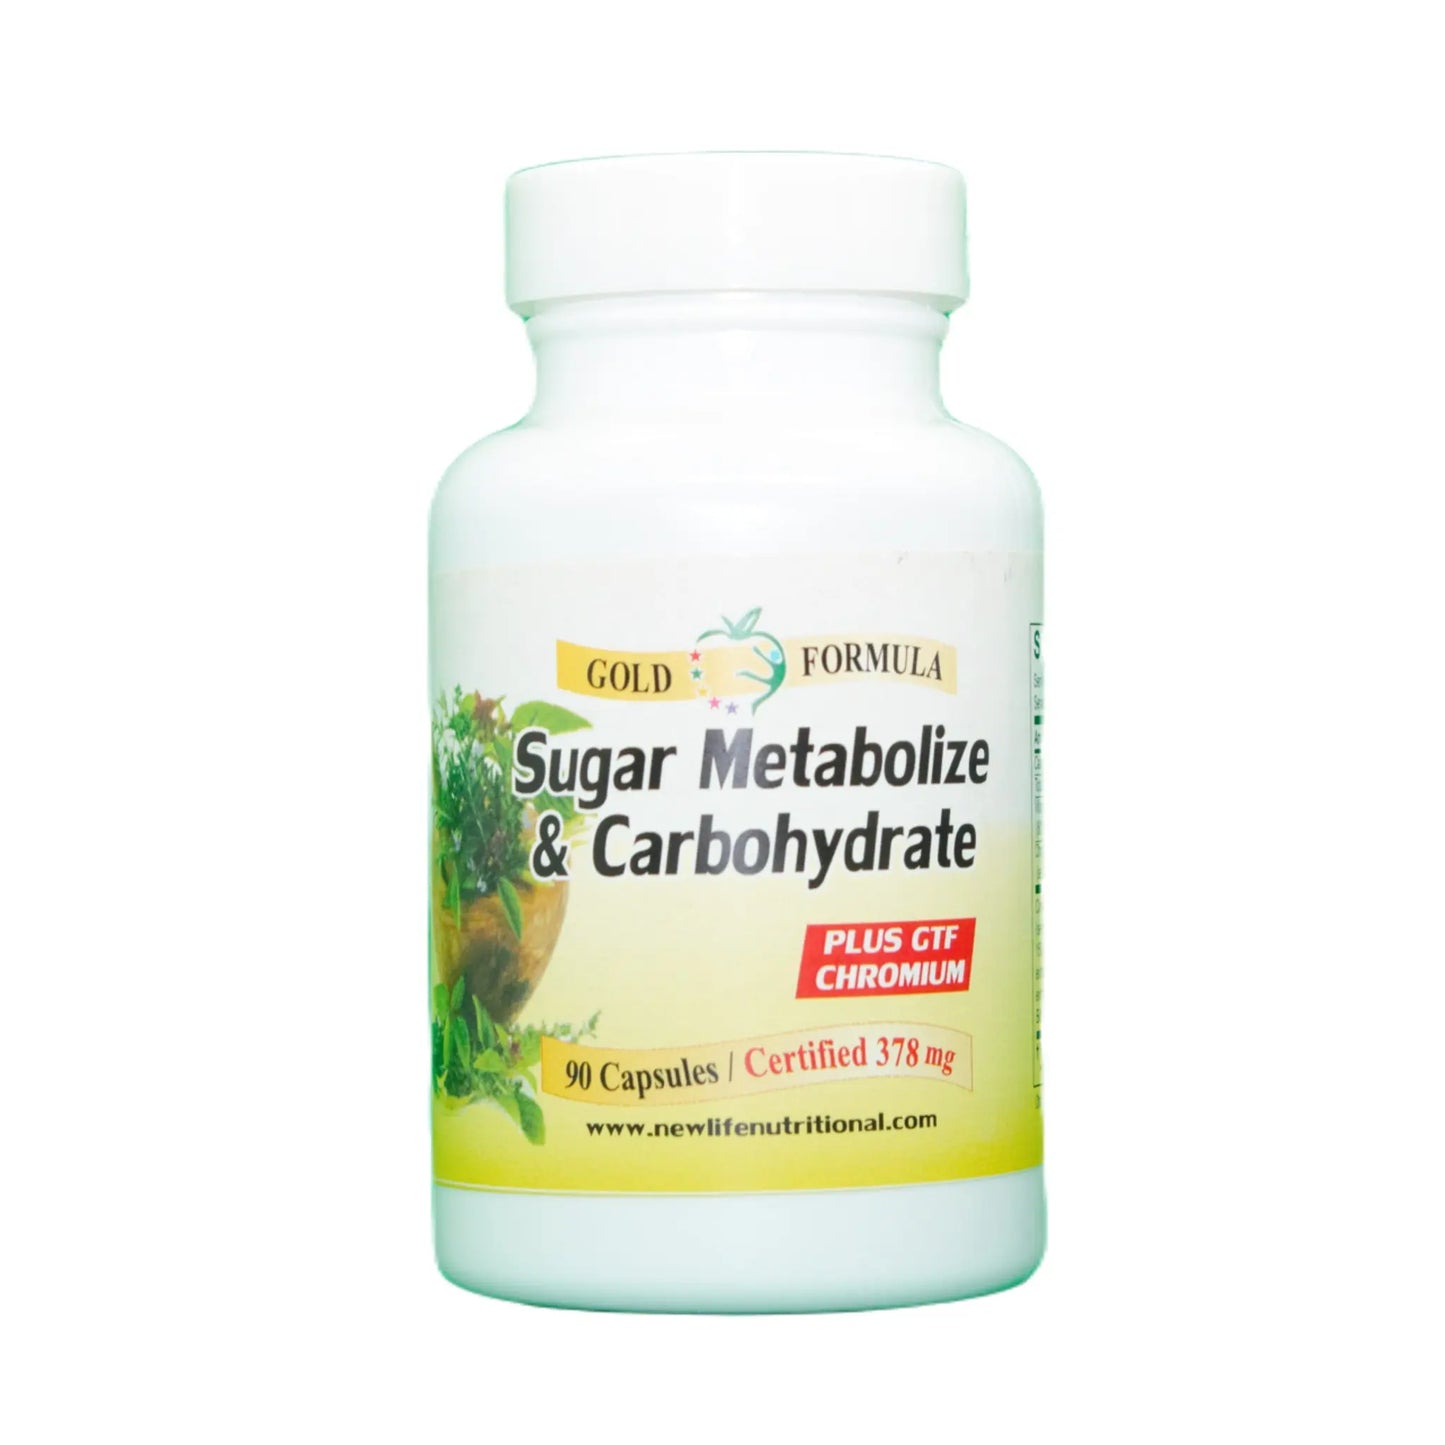 Sugar Metabolize & Carbohydrate, 90 Capsules Manteniendo Tu Salud